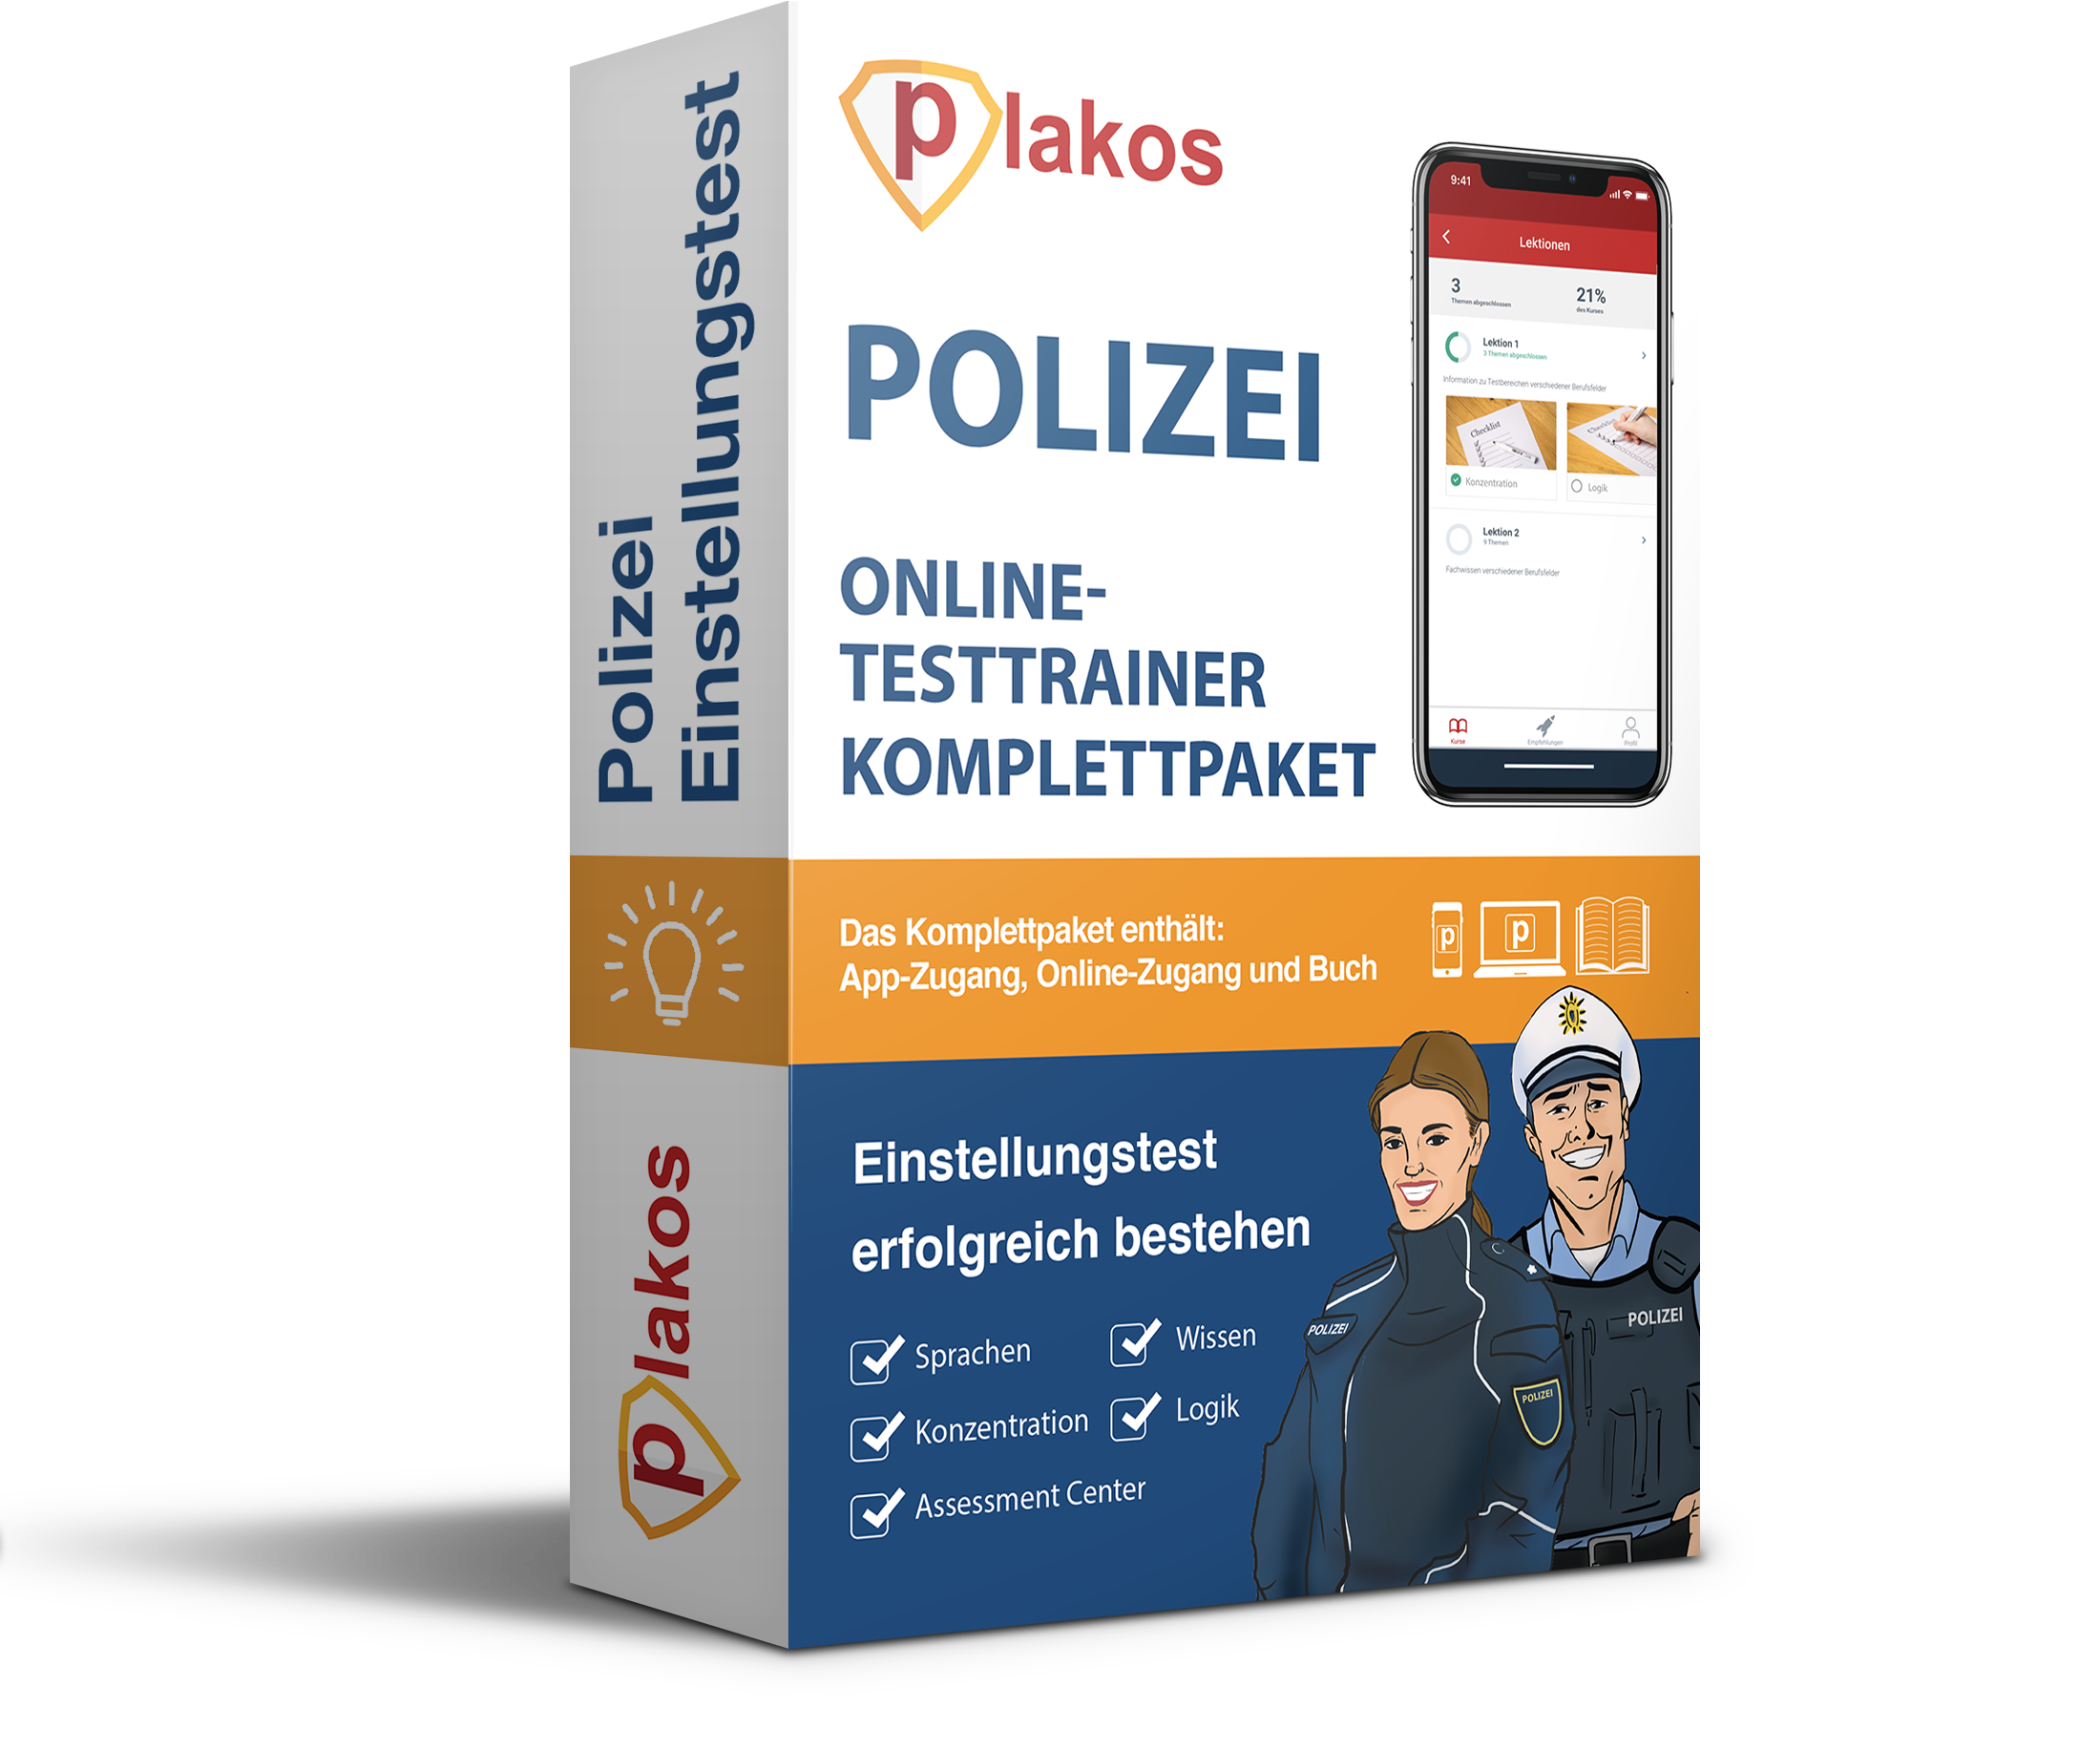 Polizei Online-Testtrainer